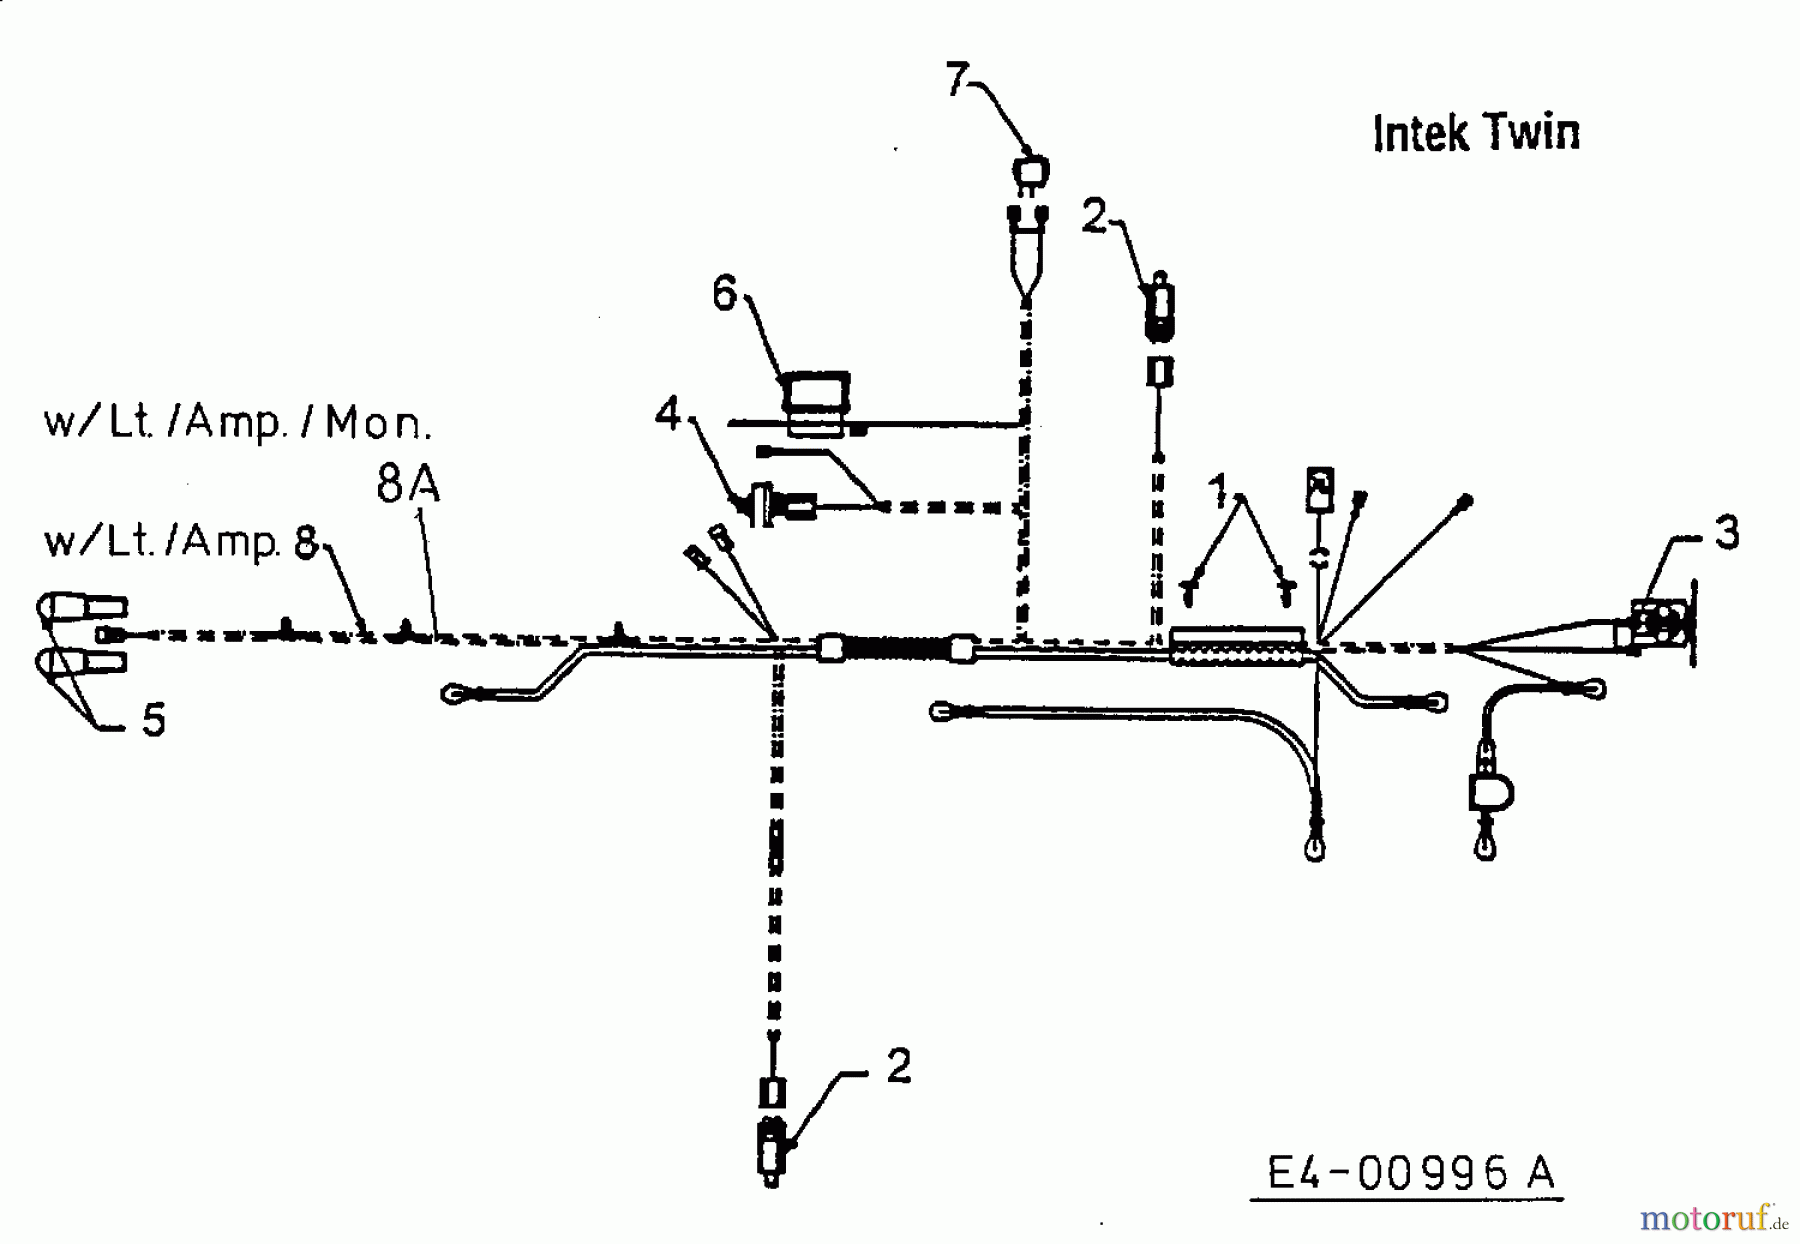  MTD Lawn tractors H 140/96 13AA695F600  (2003) Wiring diagram Intek Twin